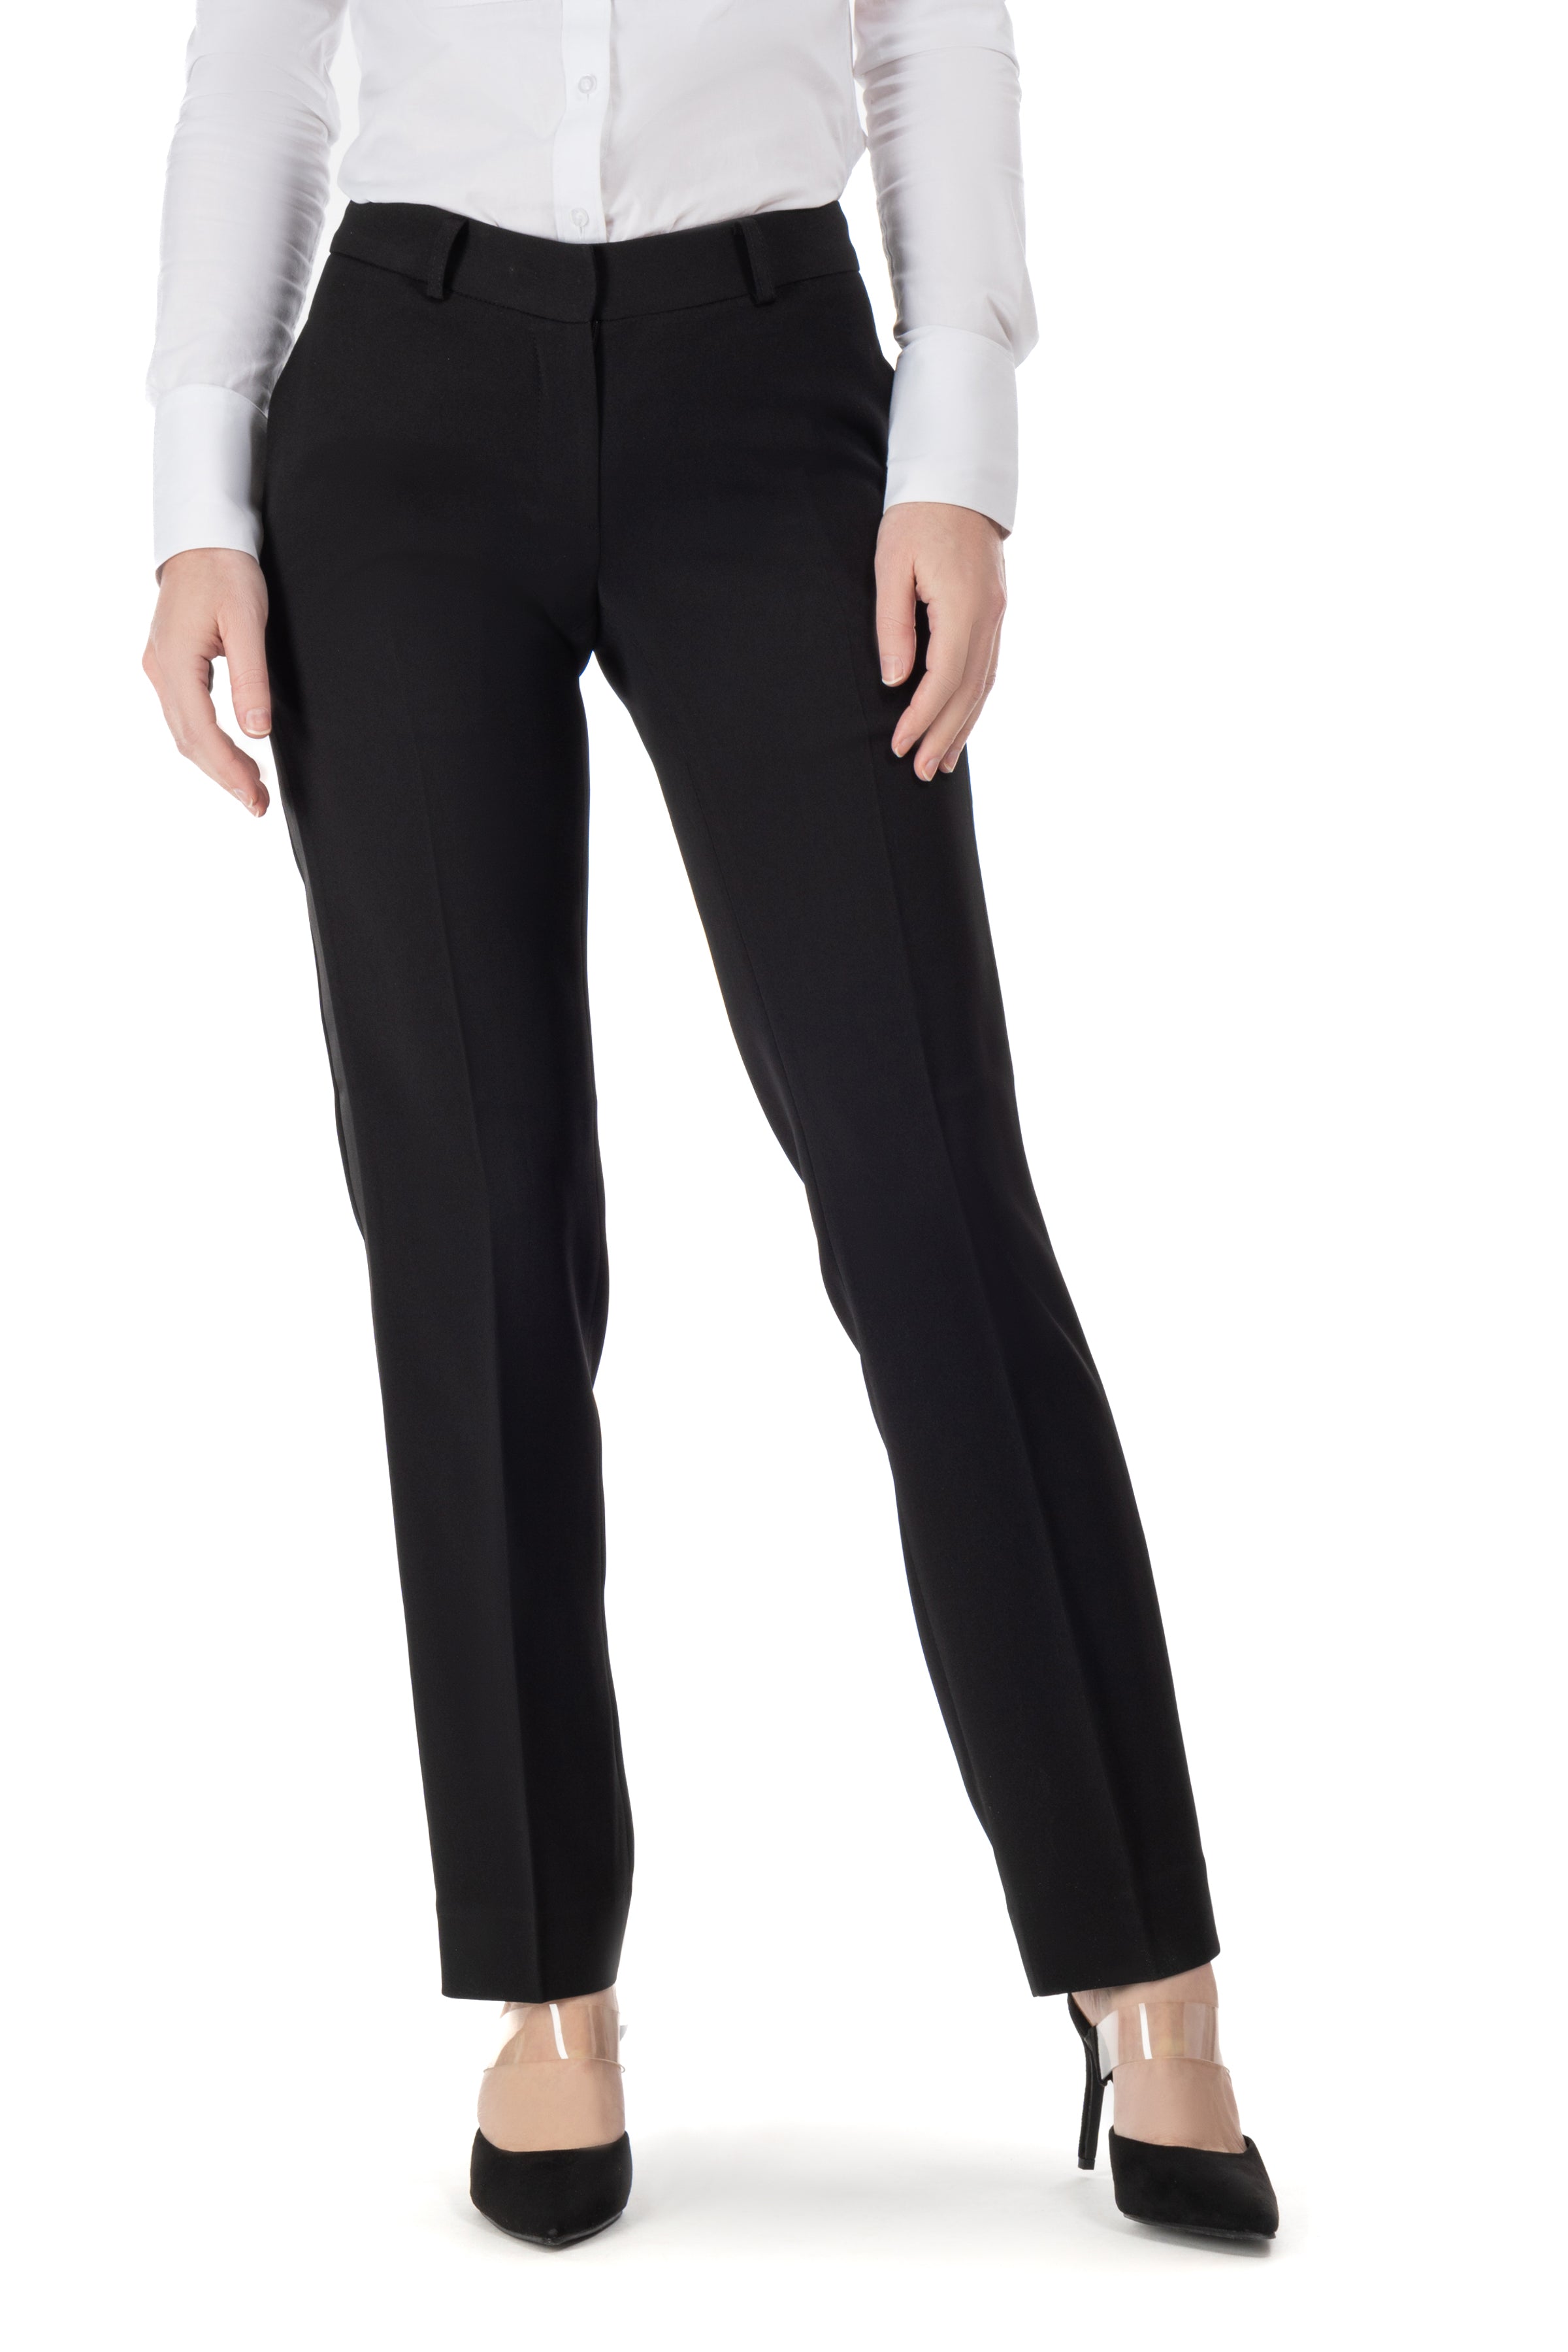 Buy Women Black Ultra Slim Fit Solid Formal Trousers Online - 80858 | Allen  Solly